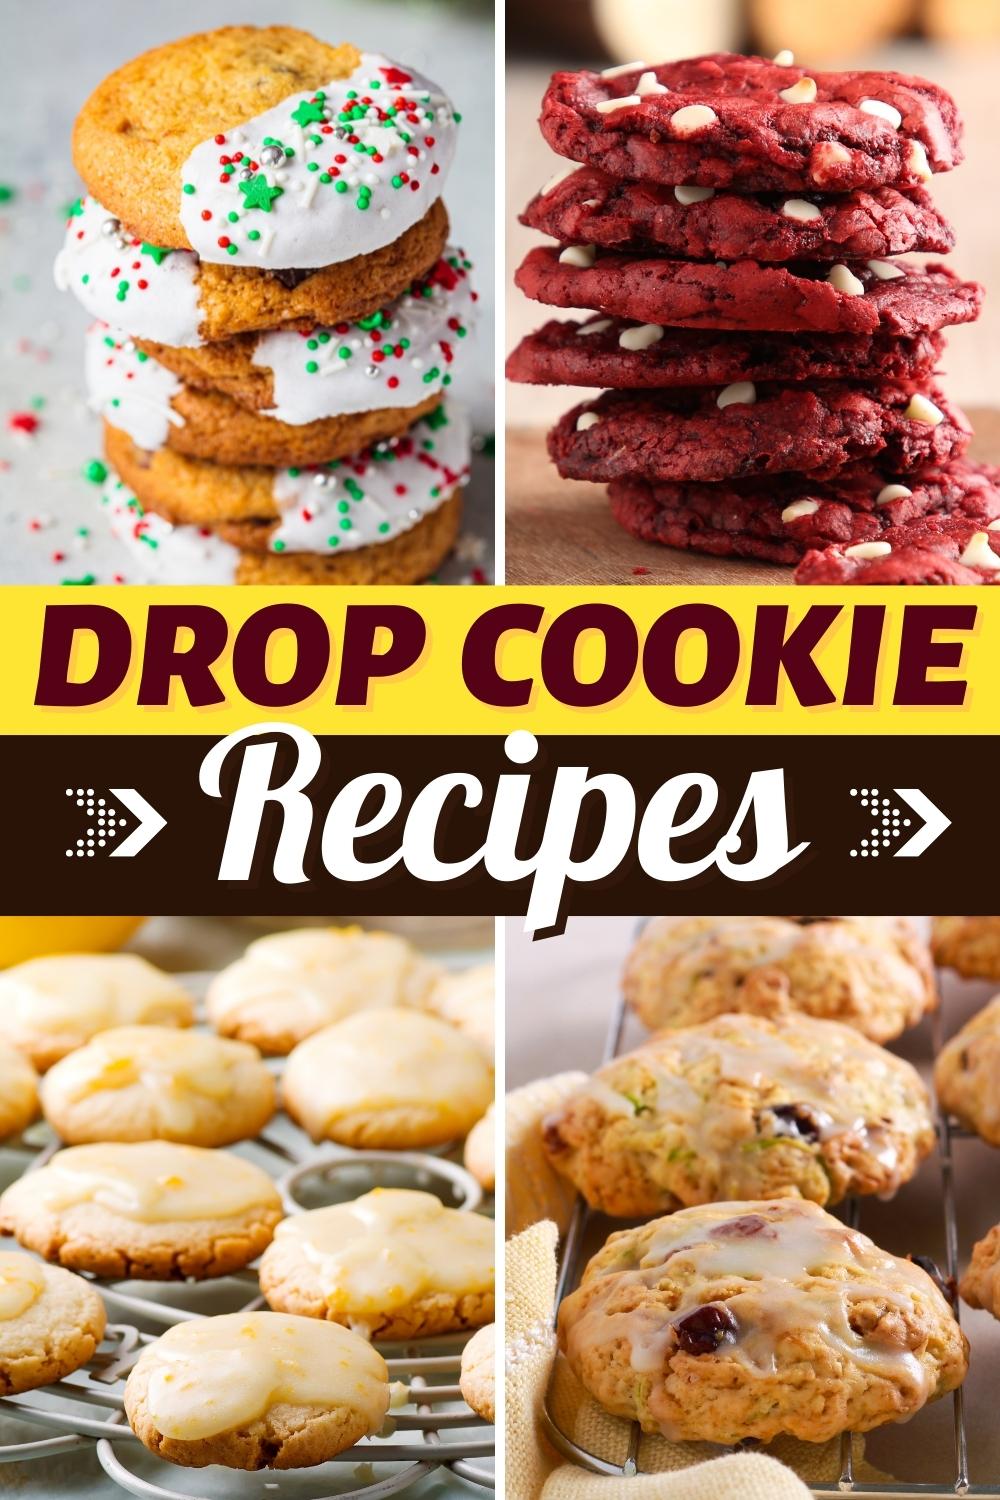 Drop Cookie Recipes 1 